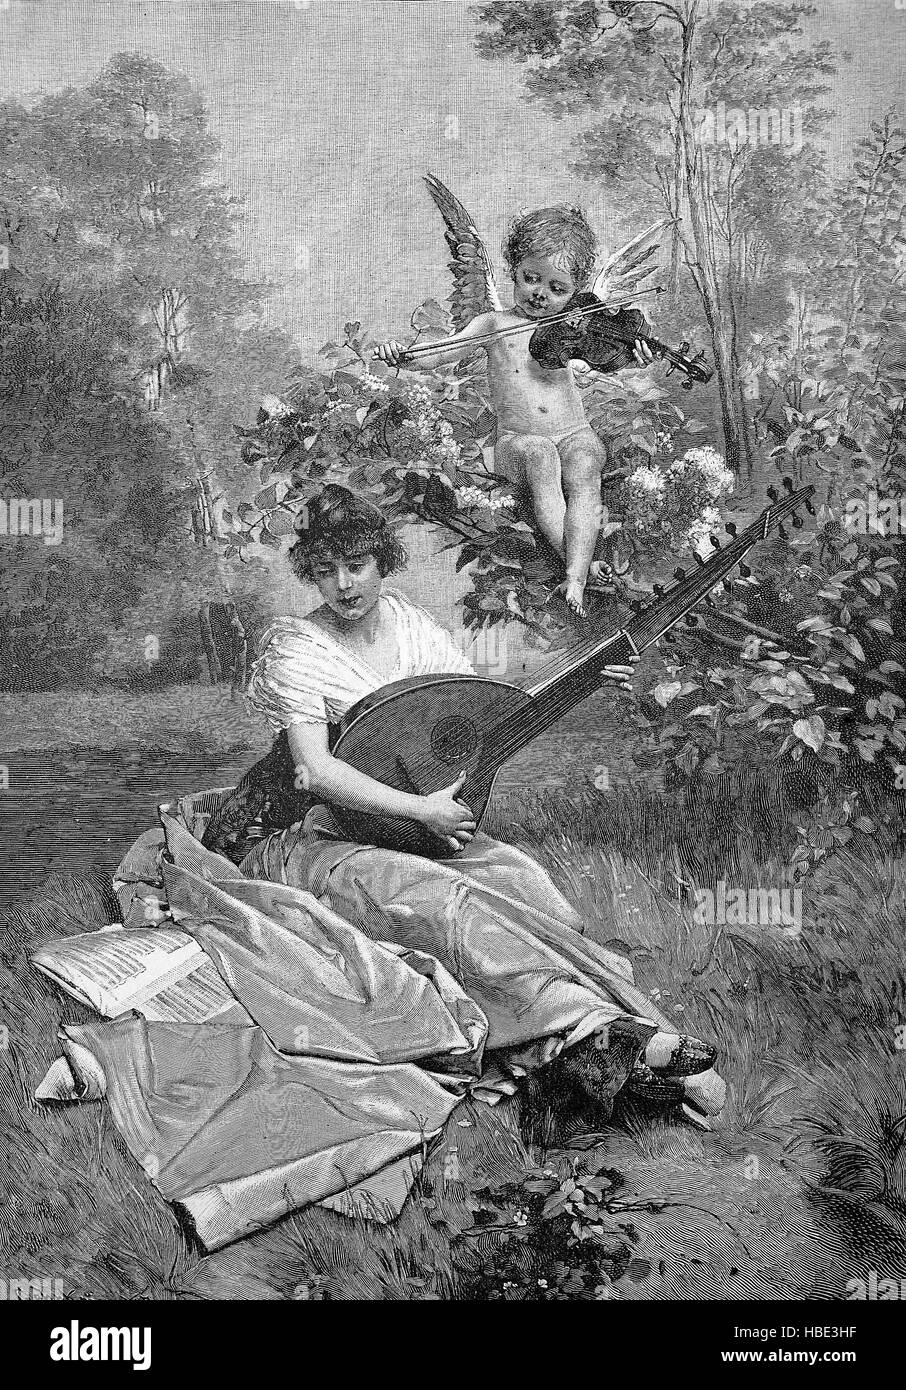 Simbolismo para una canción de amor, una mujer con un laúd en el jardín, encima es un ángel con el violín, el romanticismo del siglo XIX, la ilustración, la xilografía desde 1880 Foto de stock